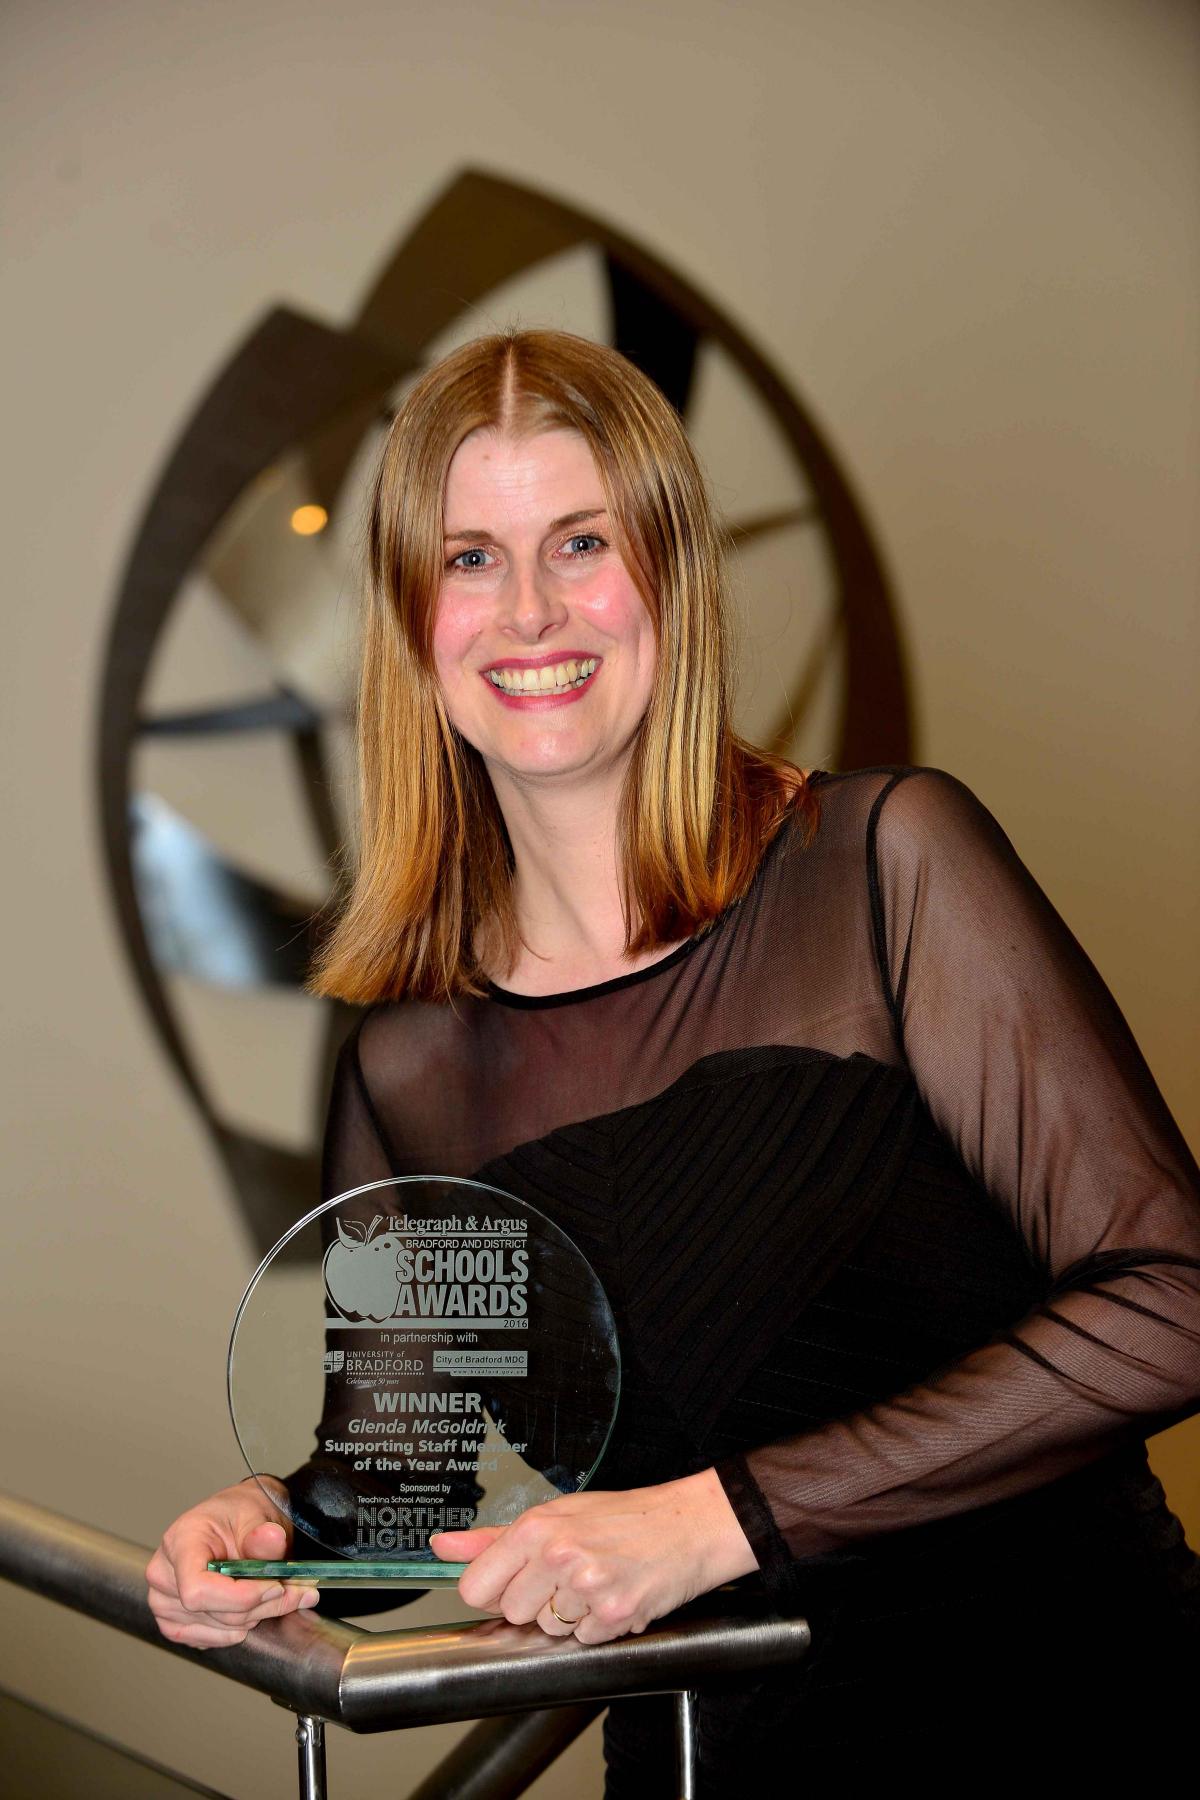 Supporting Staff Member of the Year winner, Glenda McGoldrick